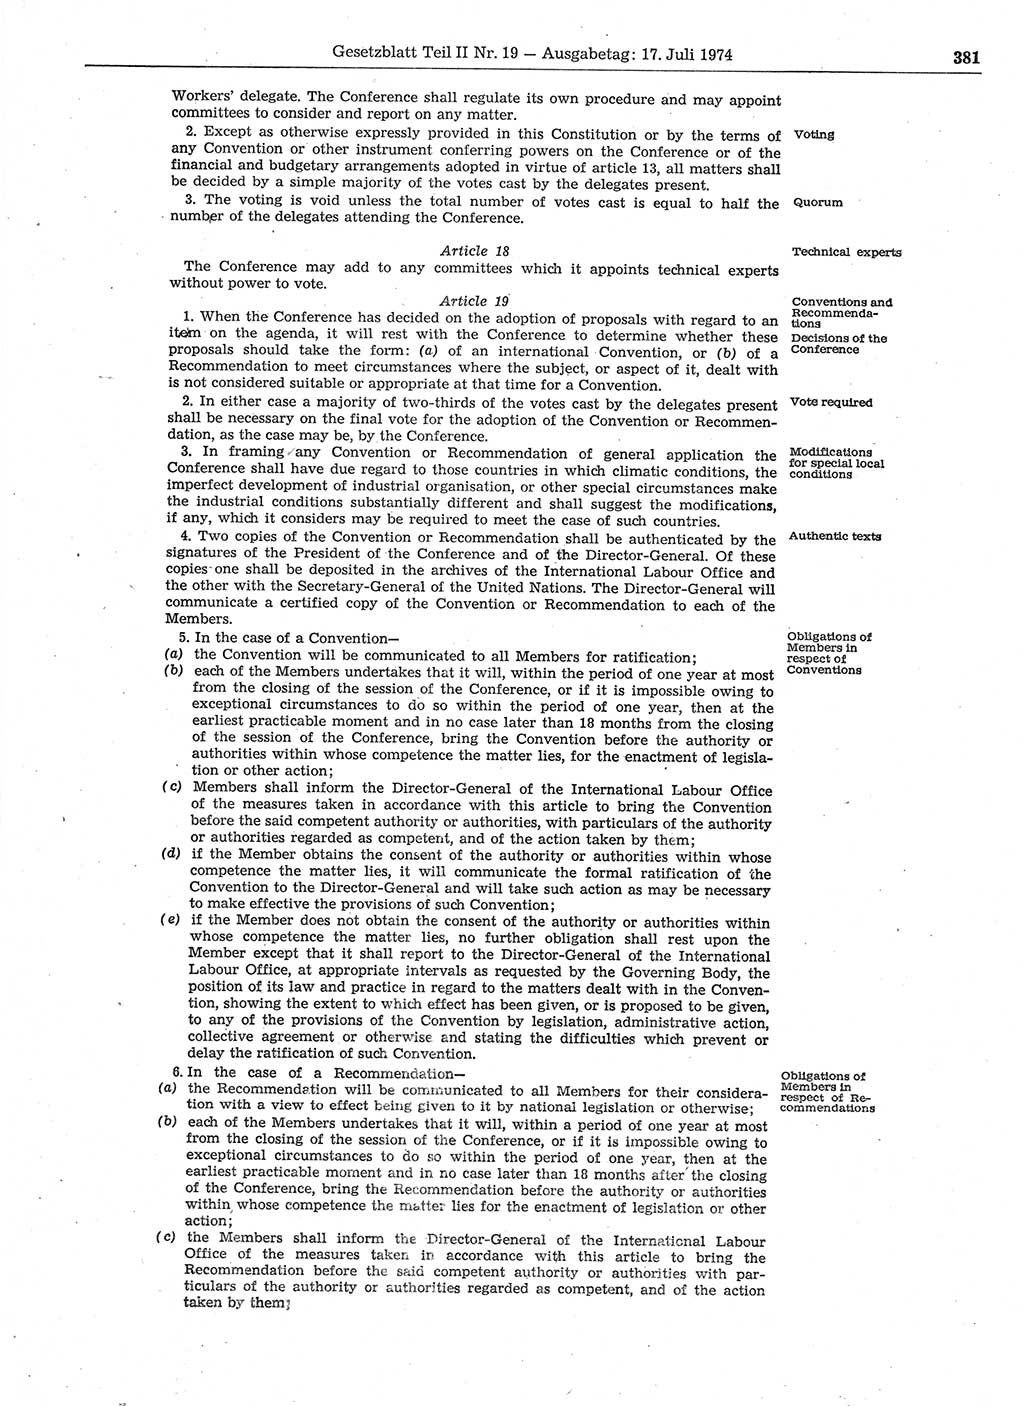 Gesetzblatt (GBl.) der Deutschen Demokratischen Republik (DDR) Teil ⅠⅠ 1974, Seite 381 (GBl. DDR ⅠⅠ 1974, S. 381)